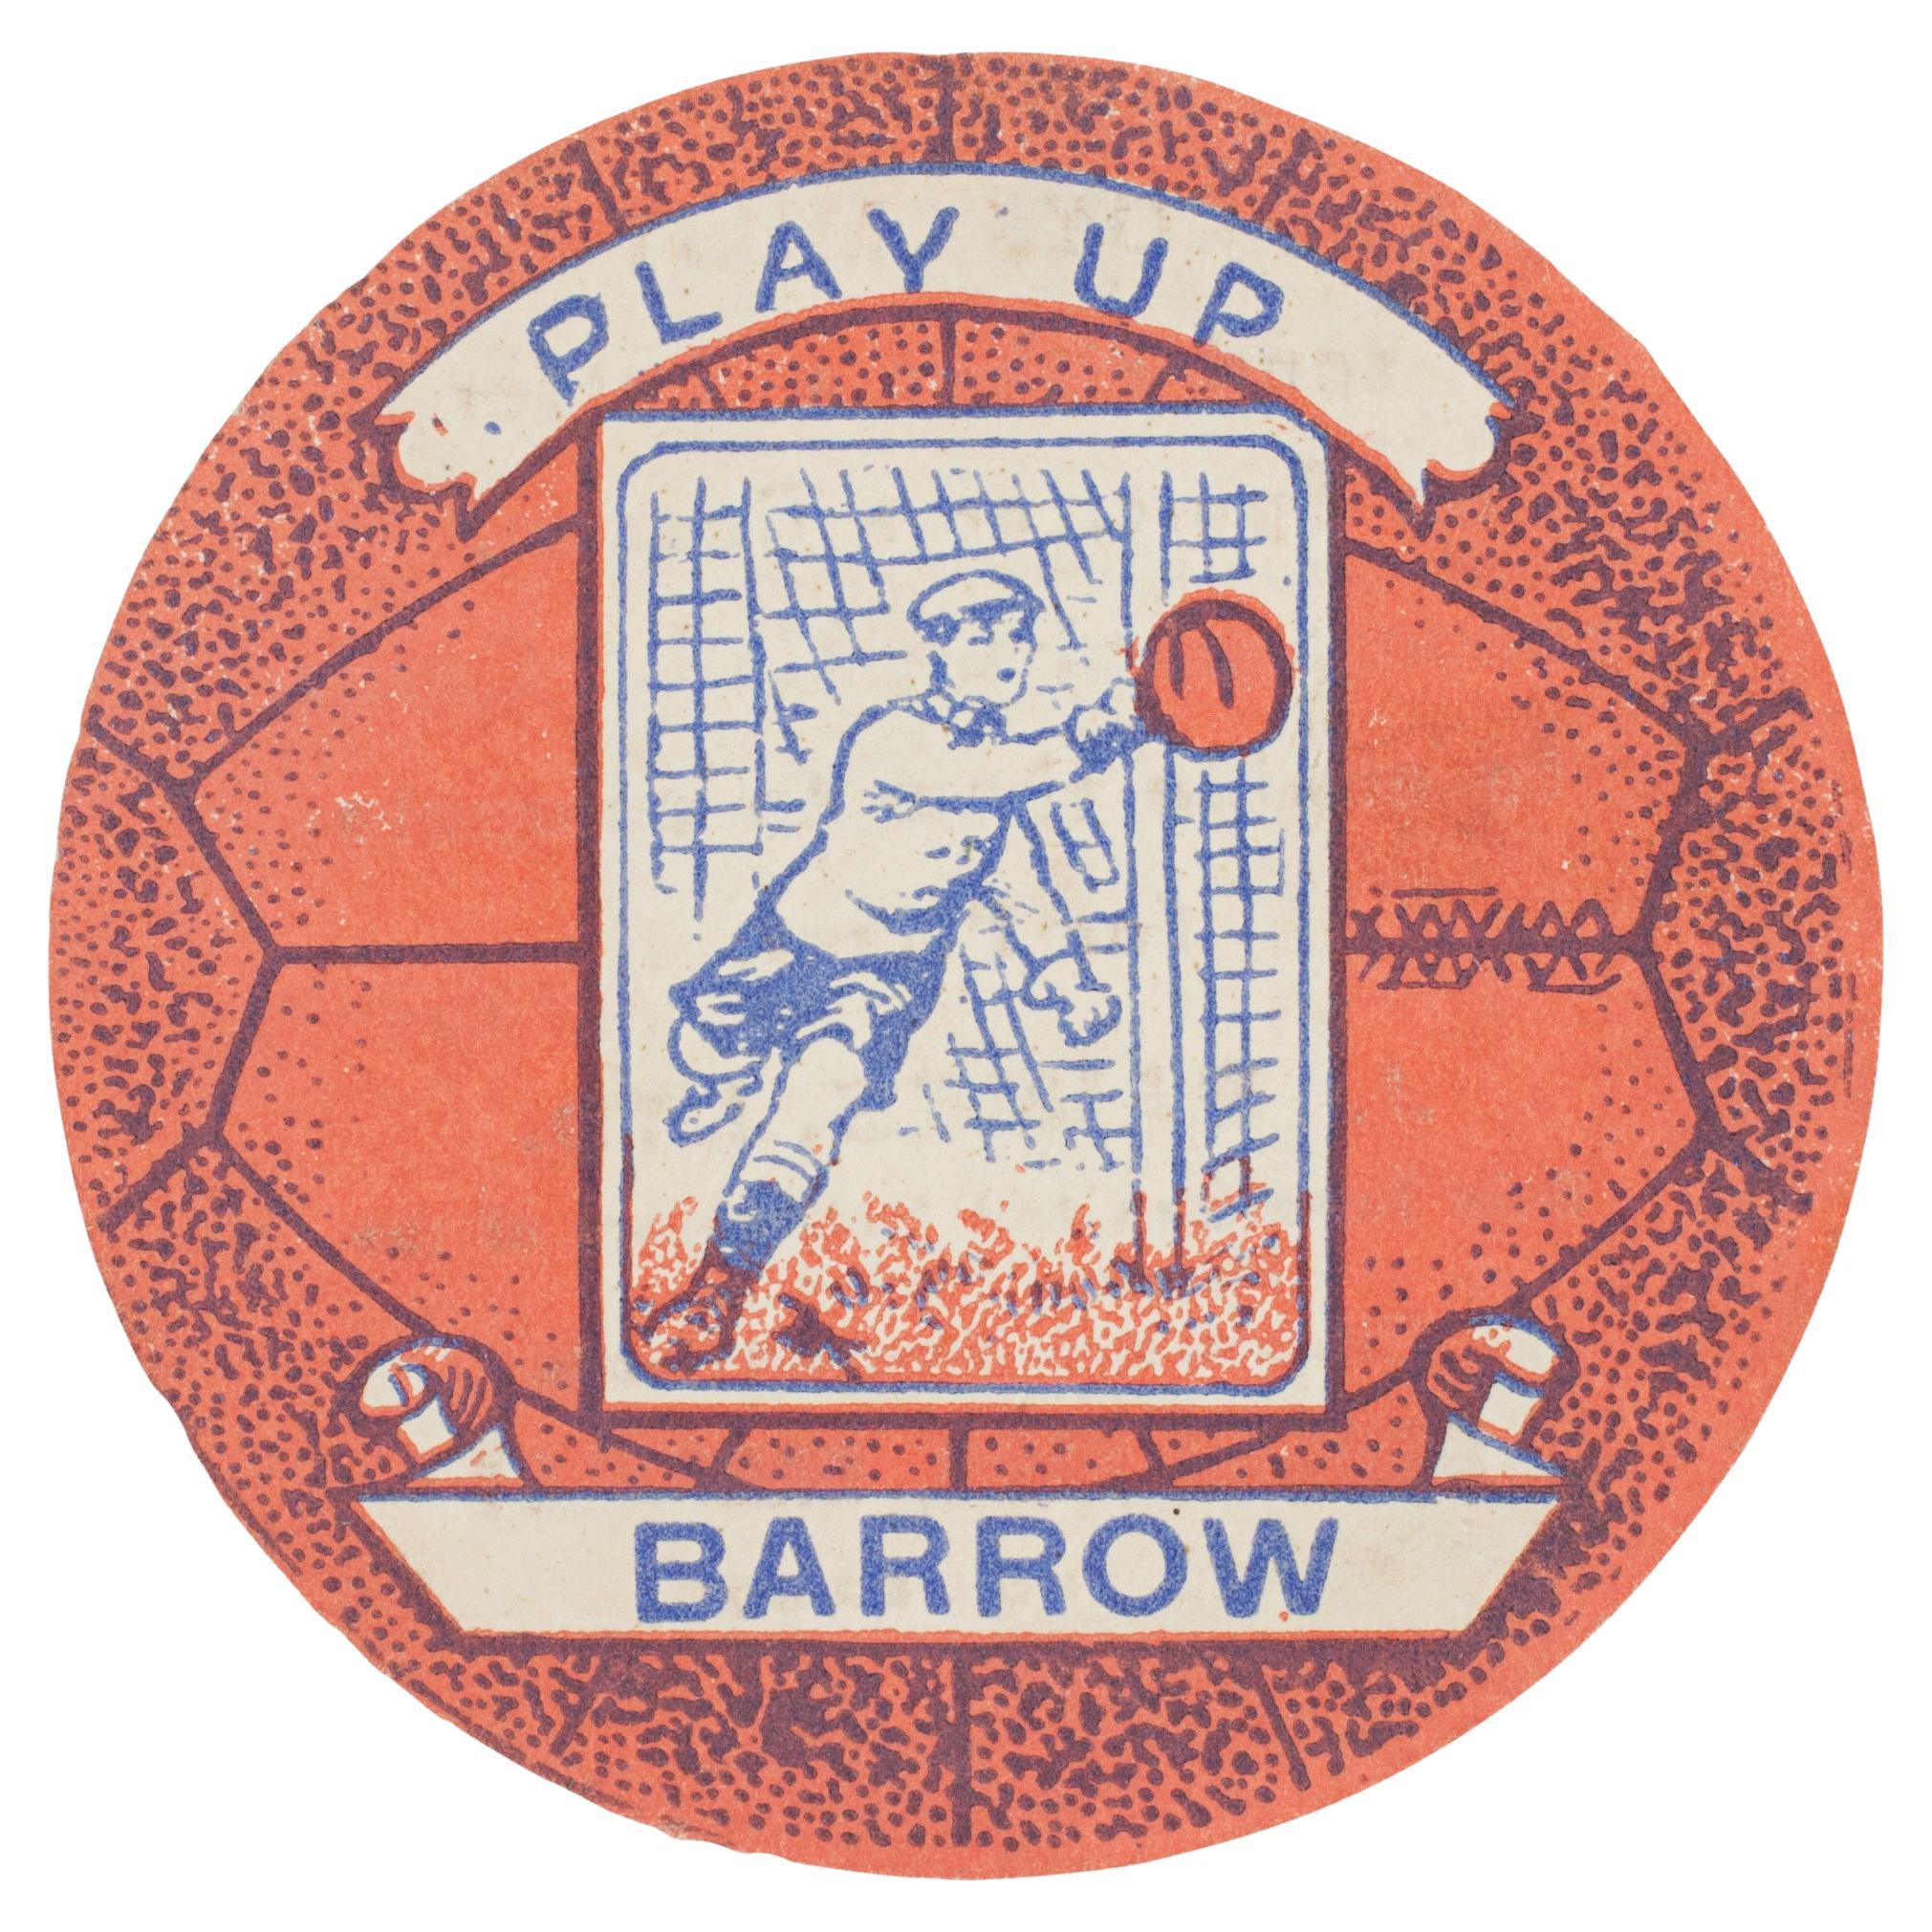 Baines Football Trade Card, Barrow, Play Up For Sale